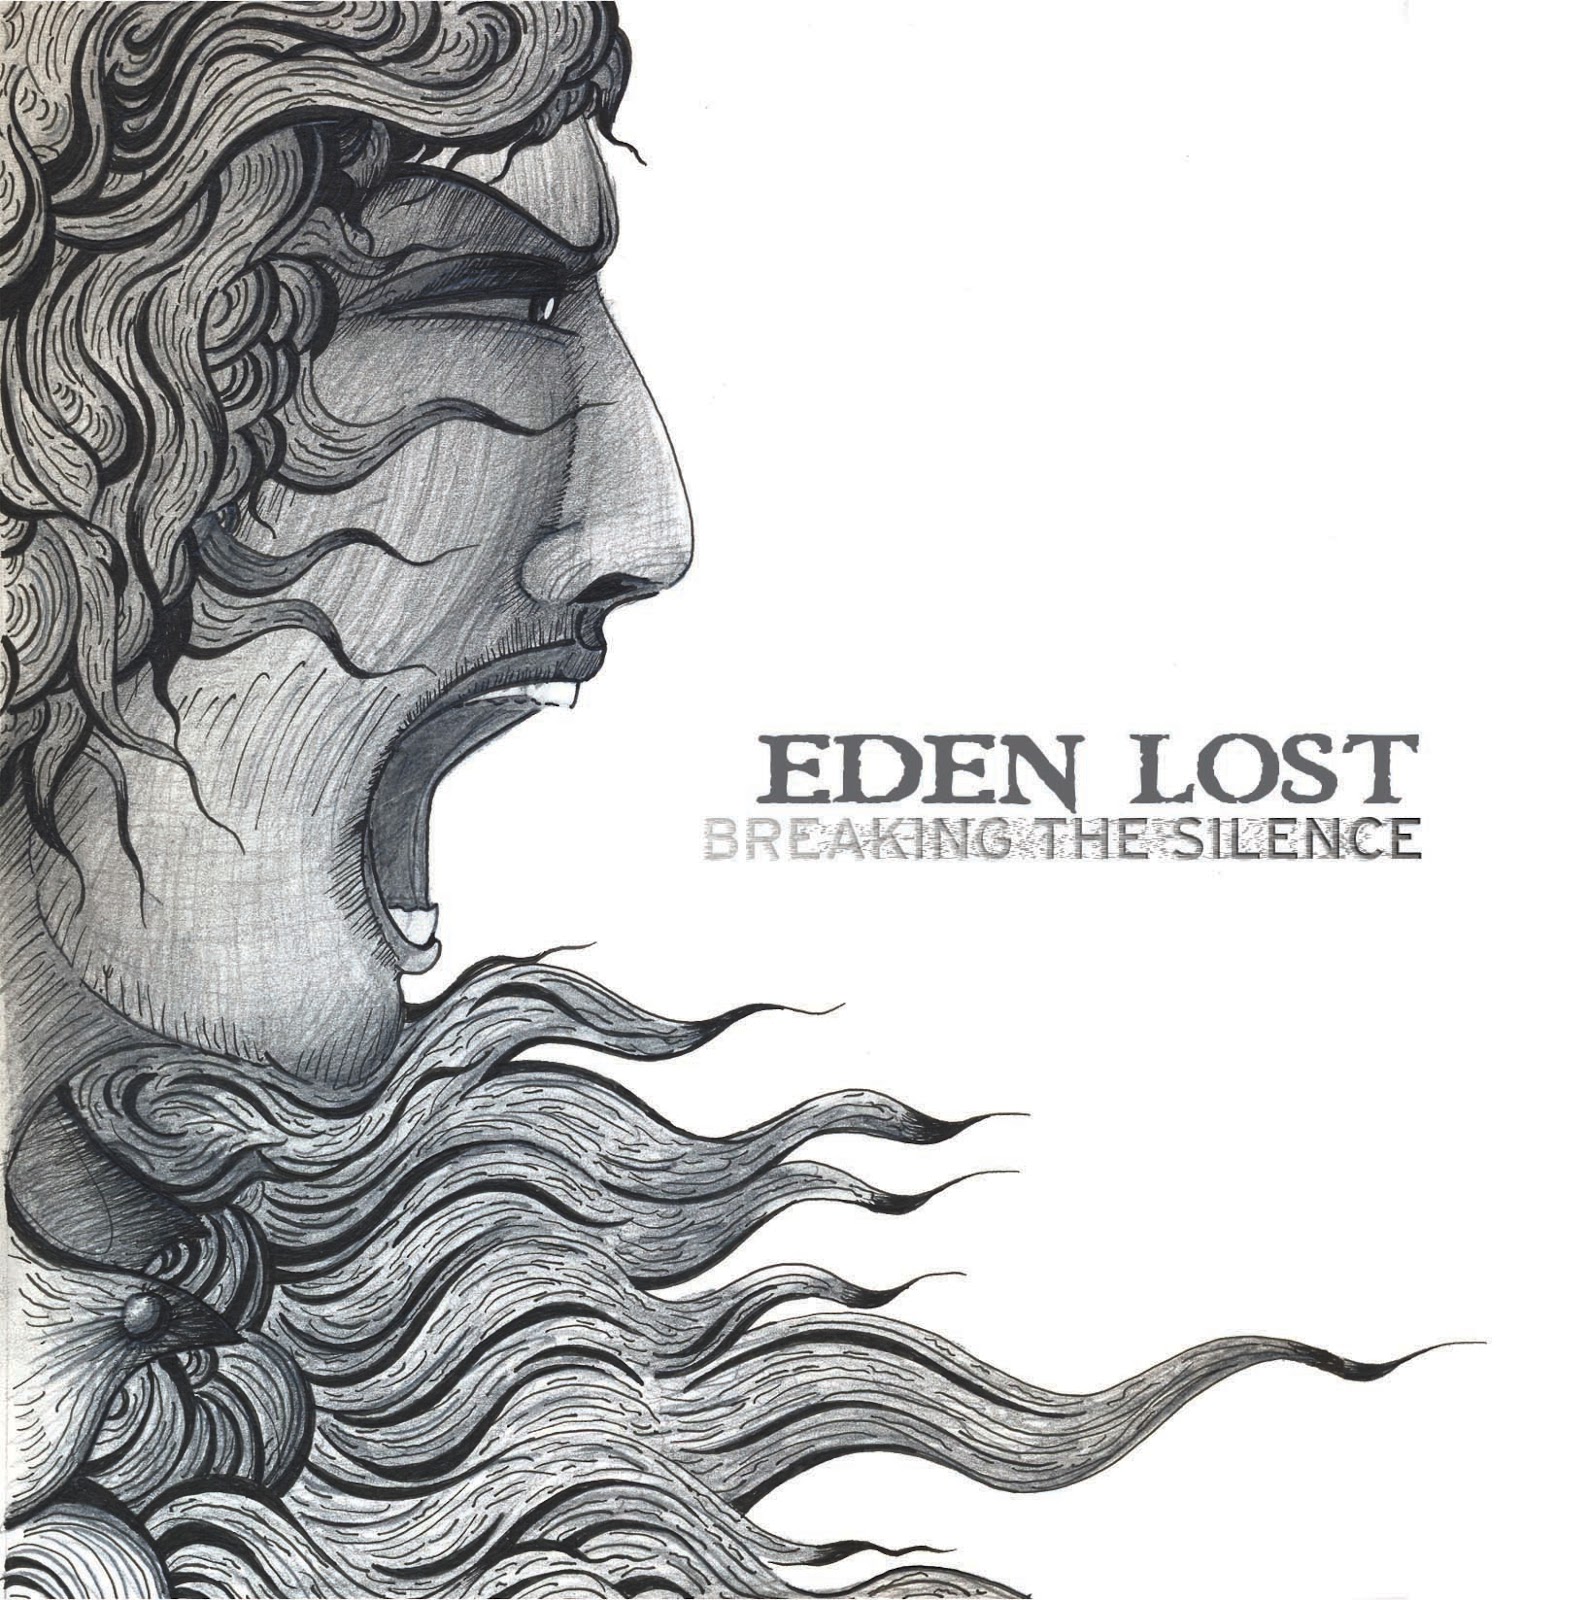 Lost Eden. Break the Silence. Breaks Lost. Eden певец. 2012 молчание